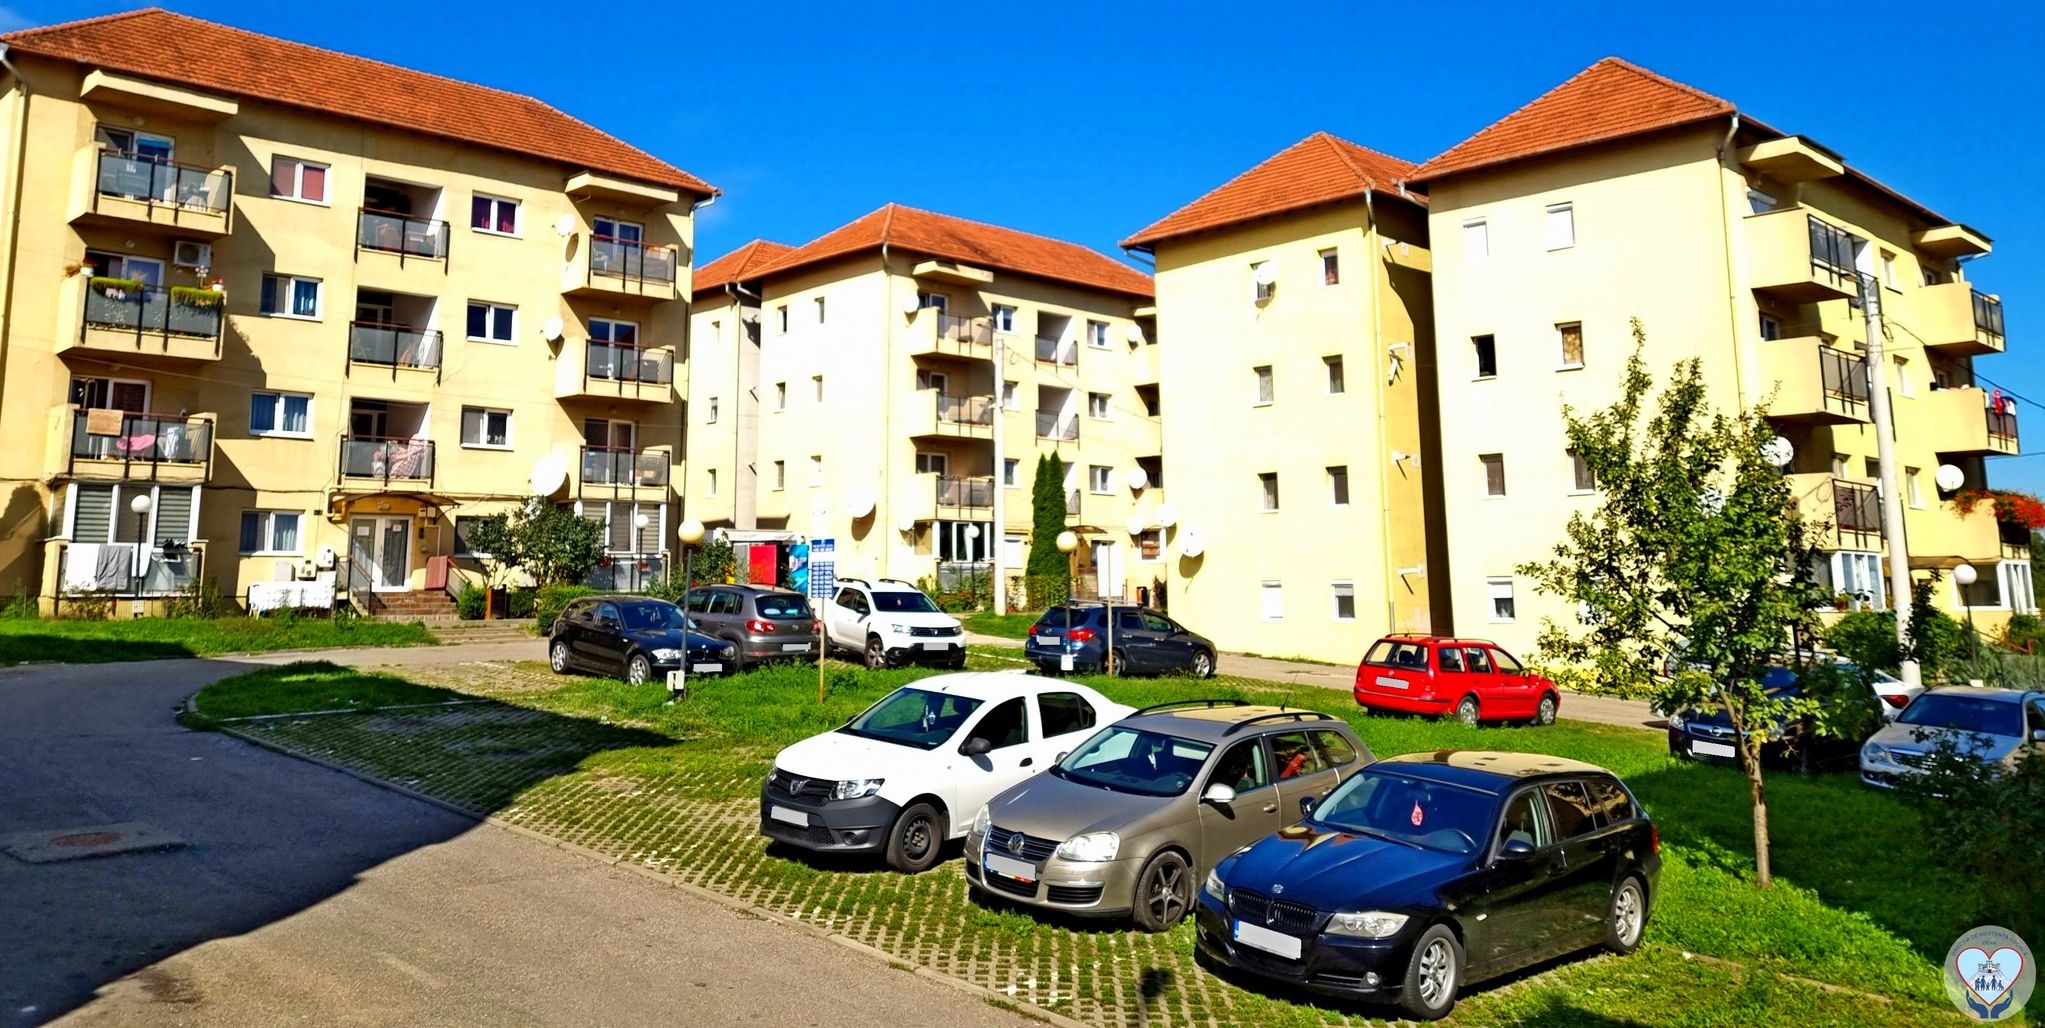 Deva: Alte 16 locuințe sociale din zona Zăvoi vor avea centrale termice noi